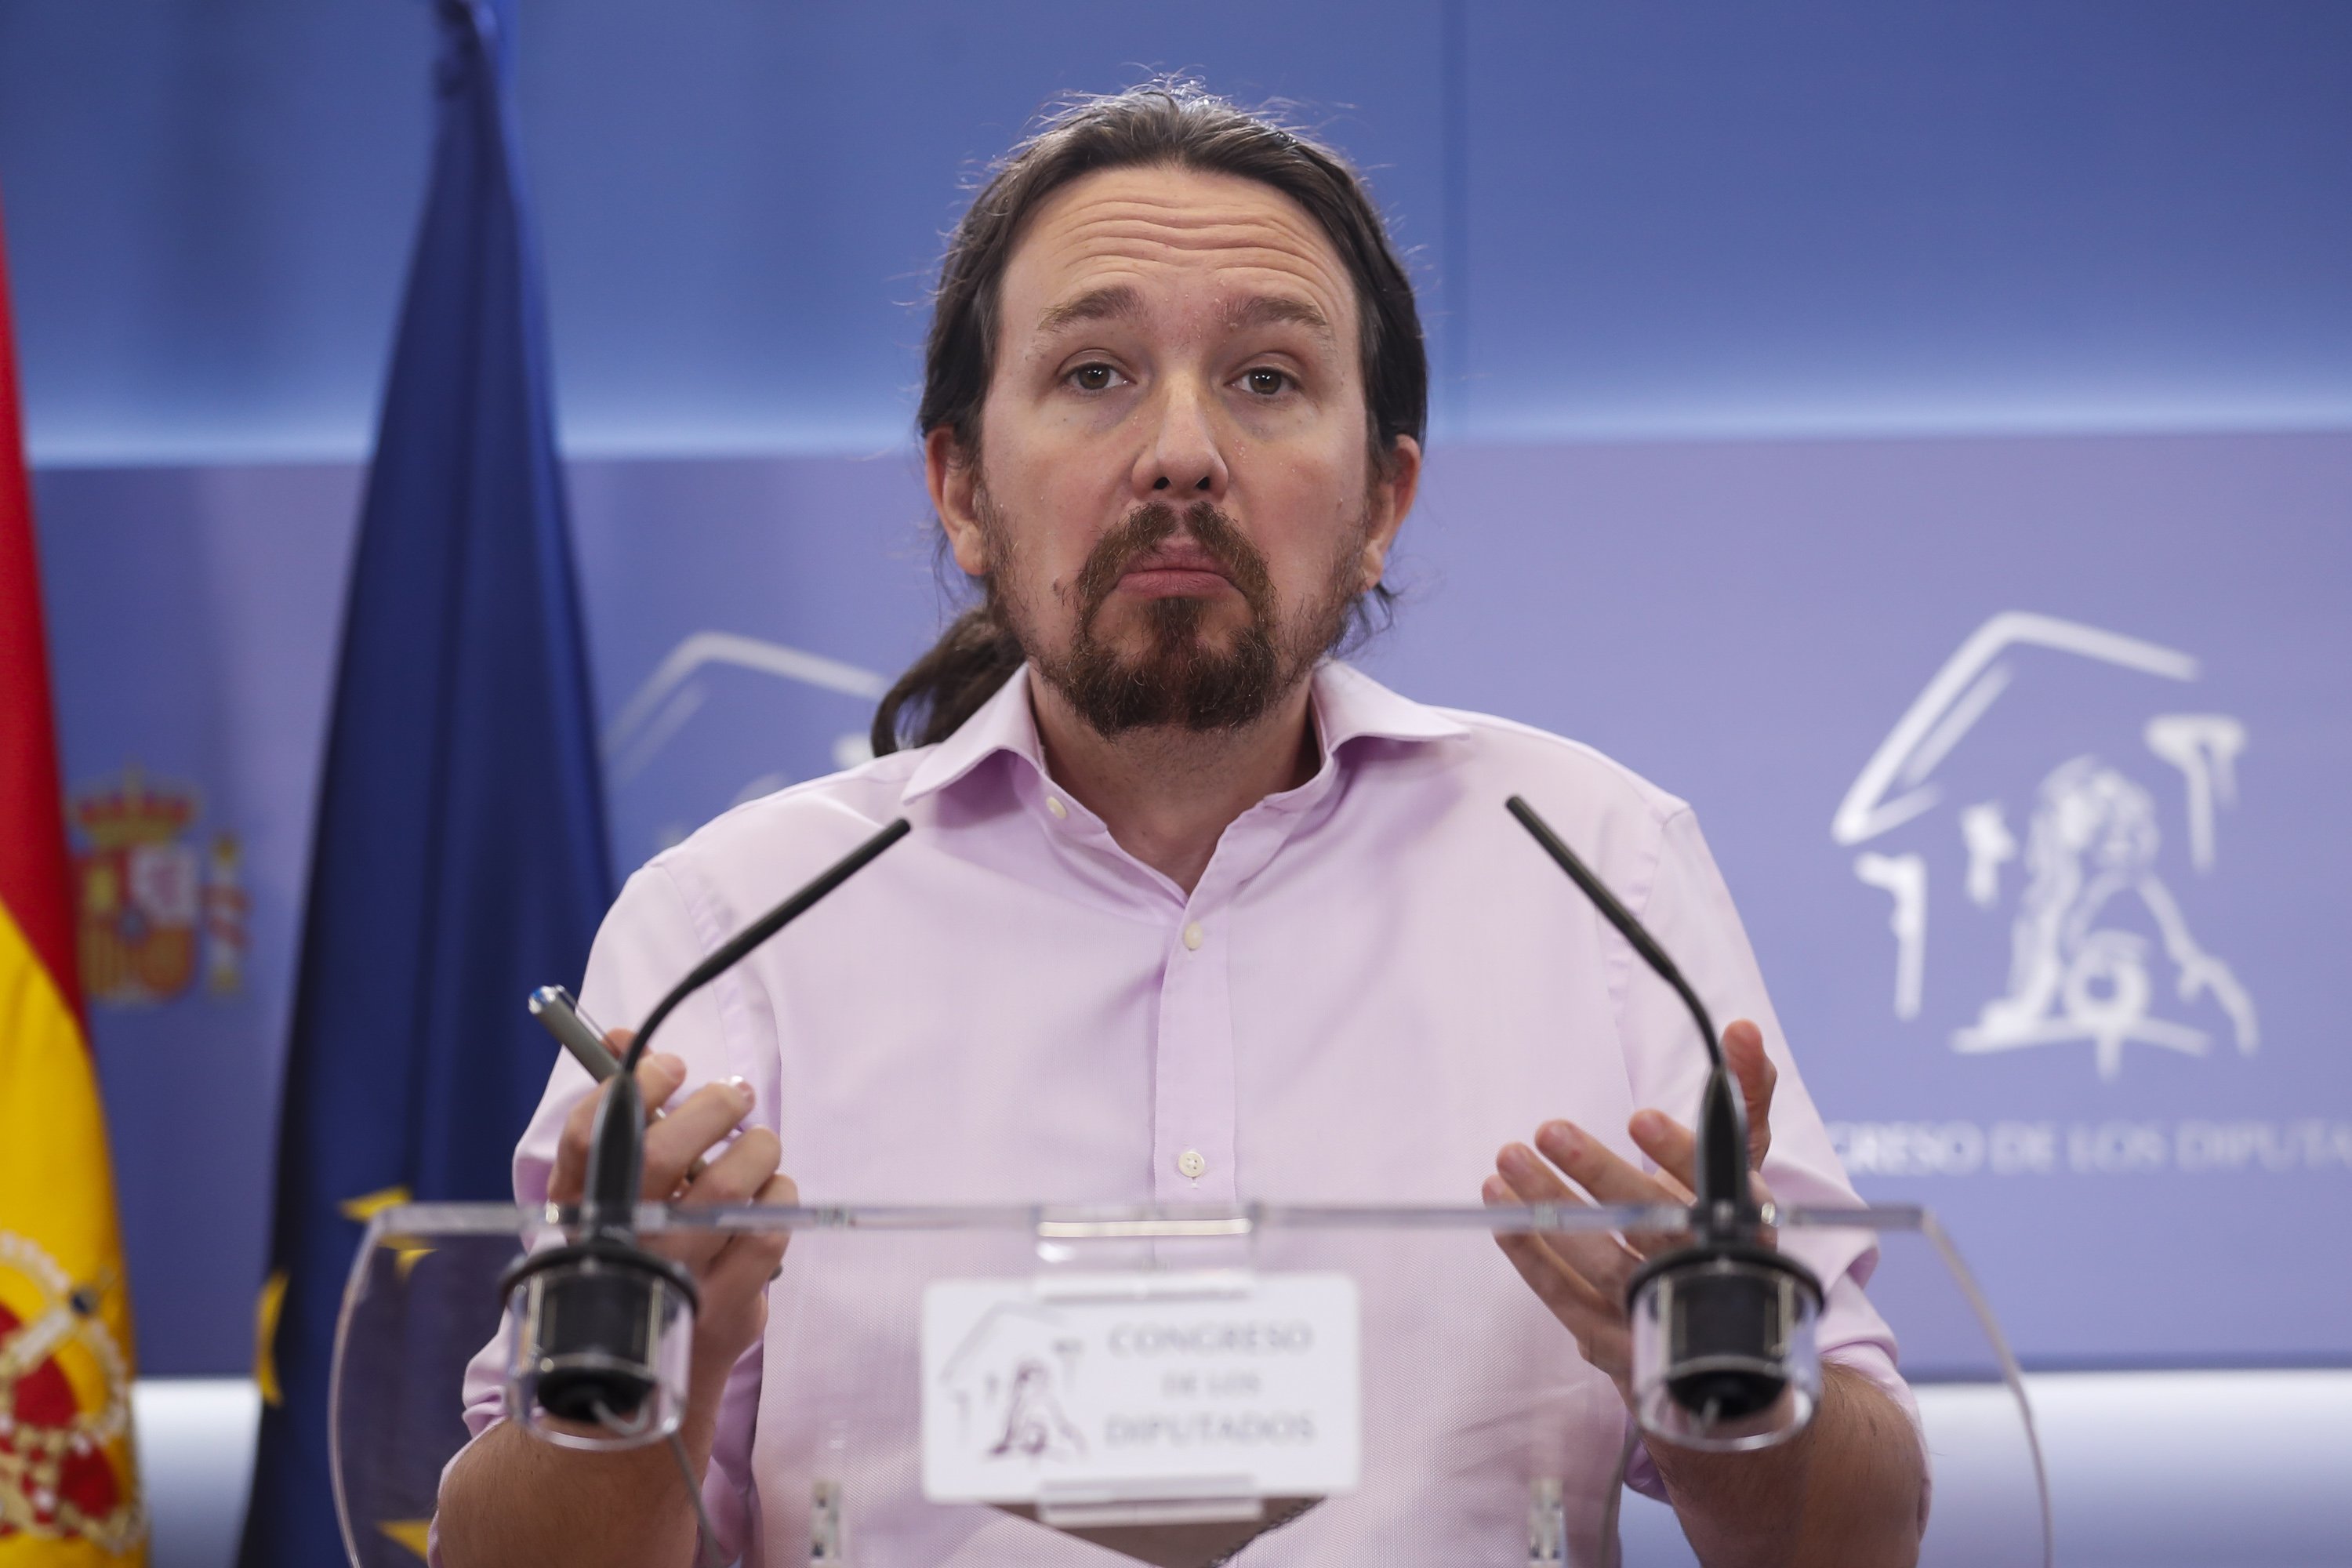 La queixa d'un militant de Podemos a Iglesias